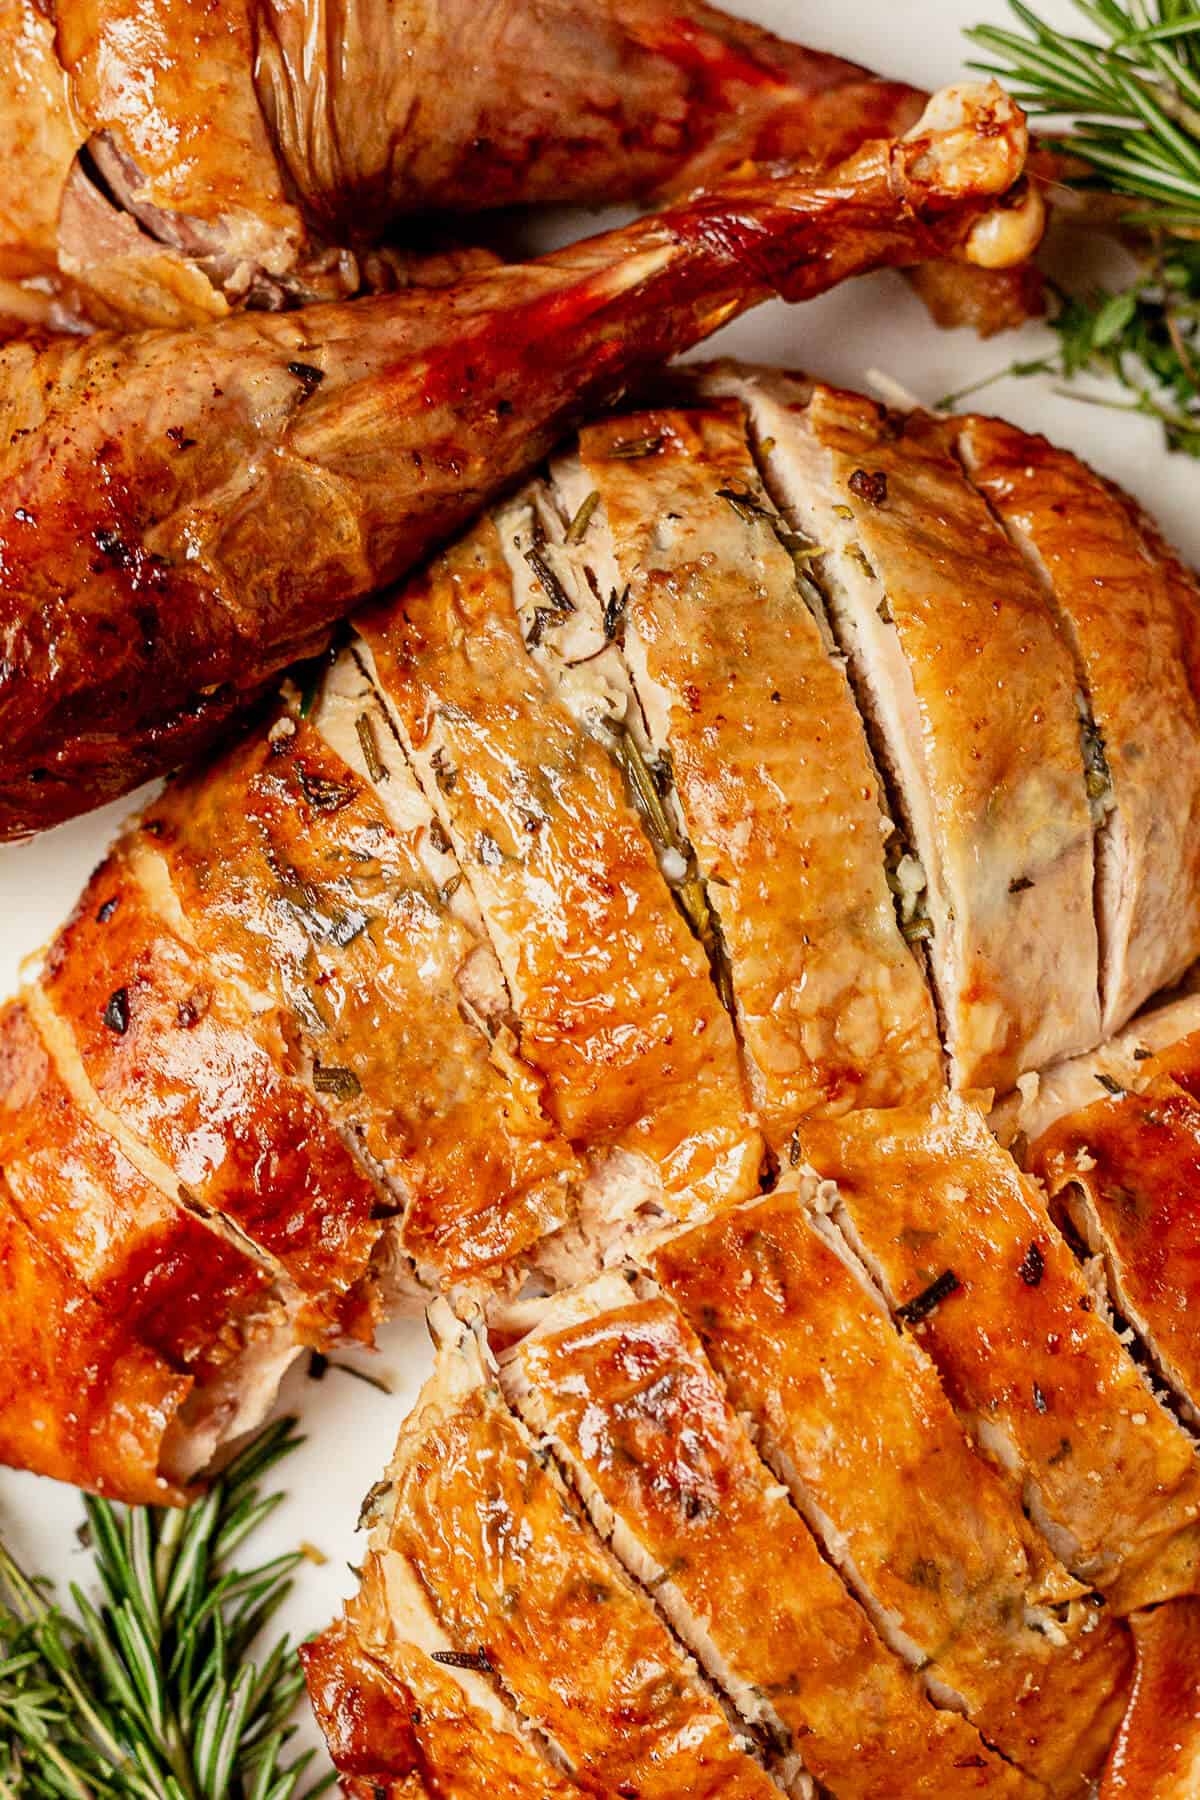 sliced roasted turkey breast next to roasted turkey legs on a platter